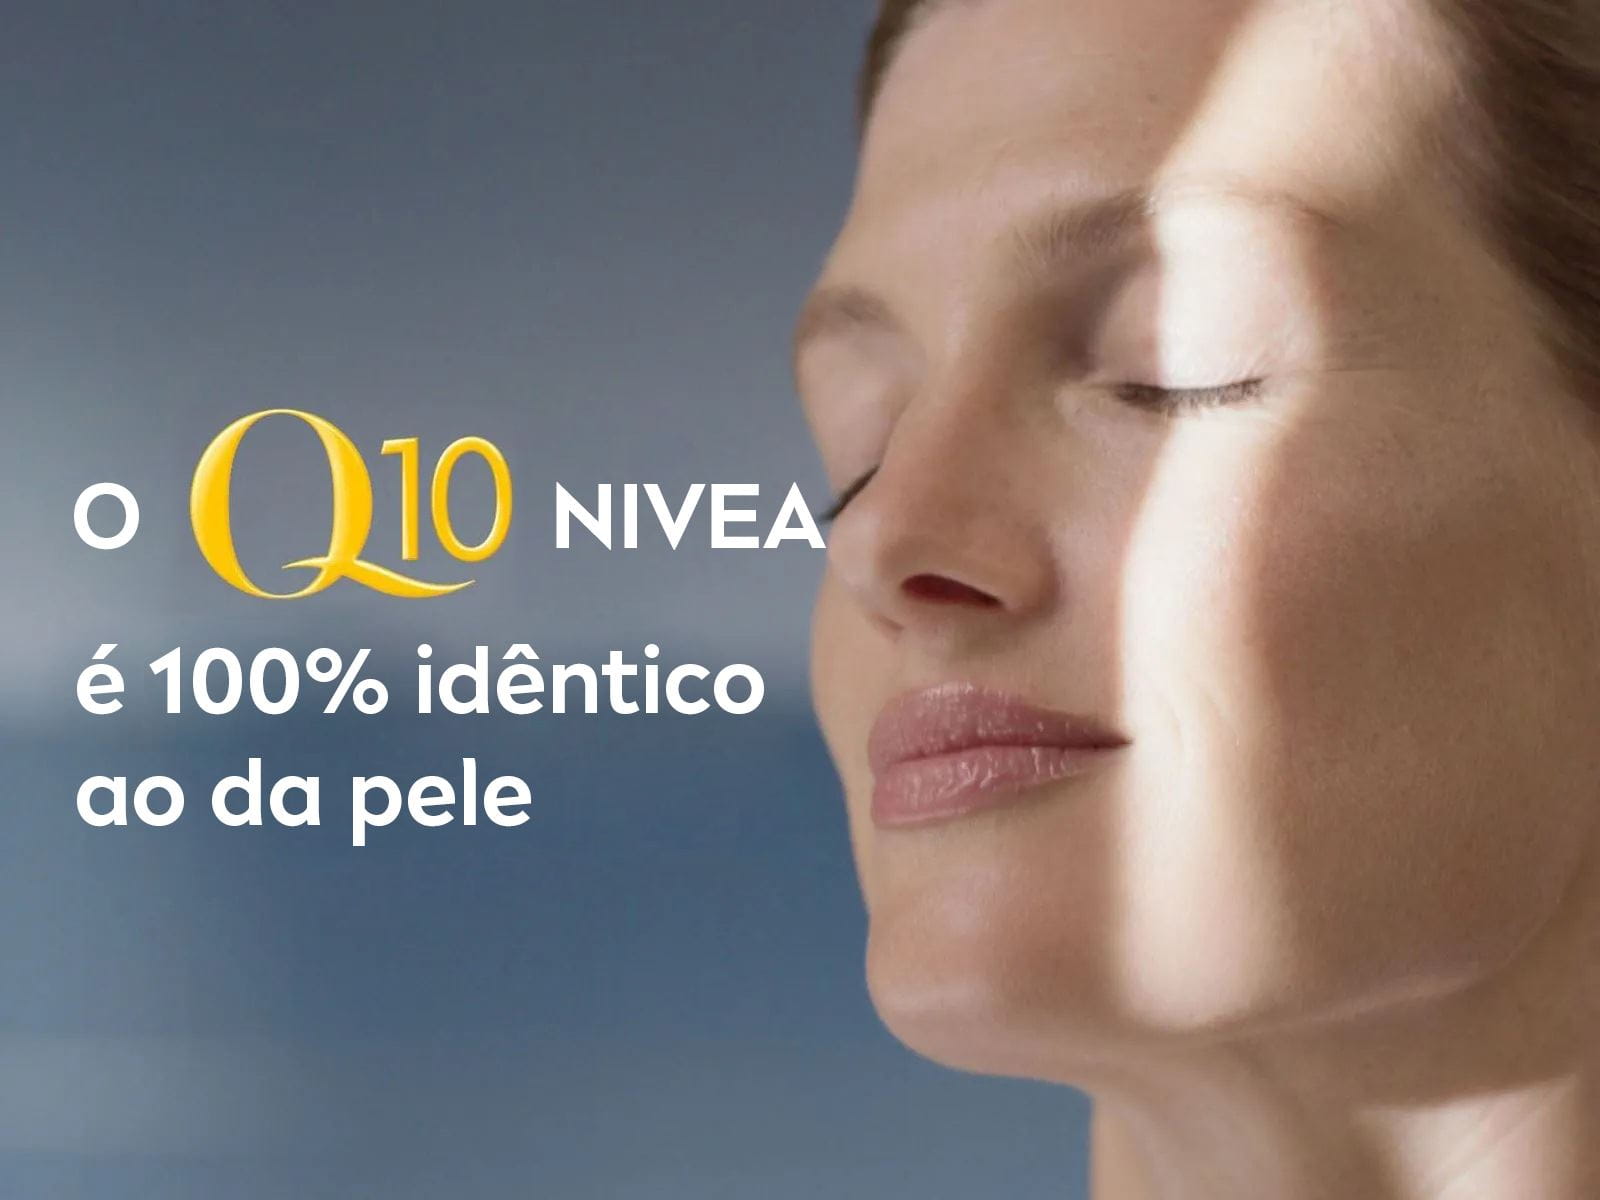 O Q10 NIVEA é 100% idêntico ao da pele